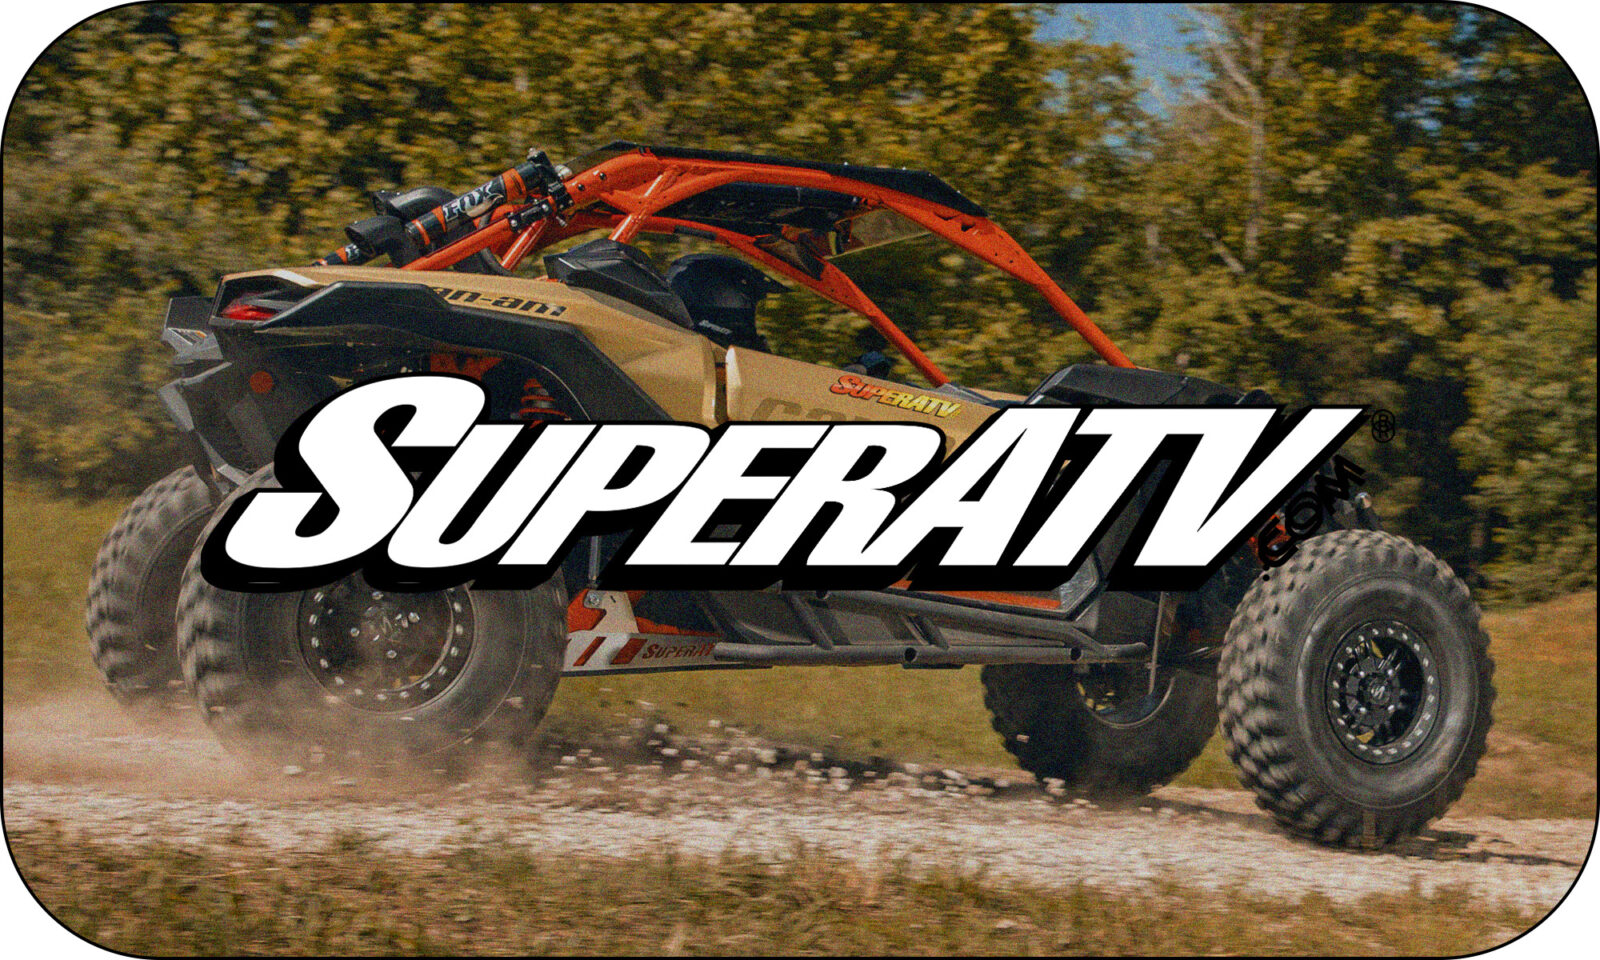 Super ATV logo over an ATV image